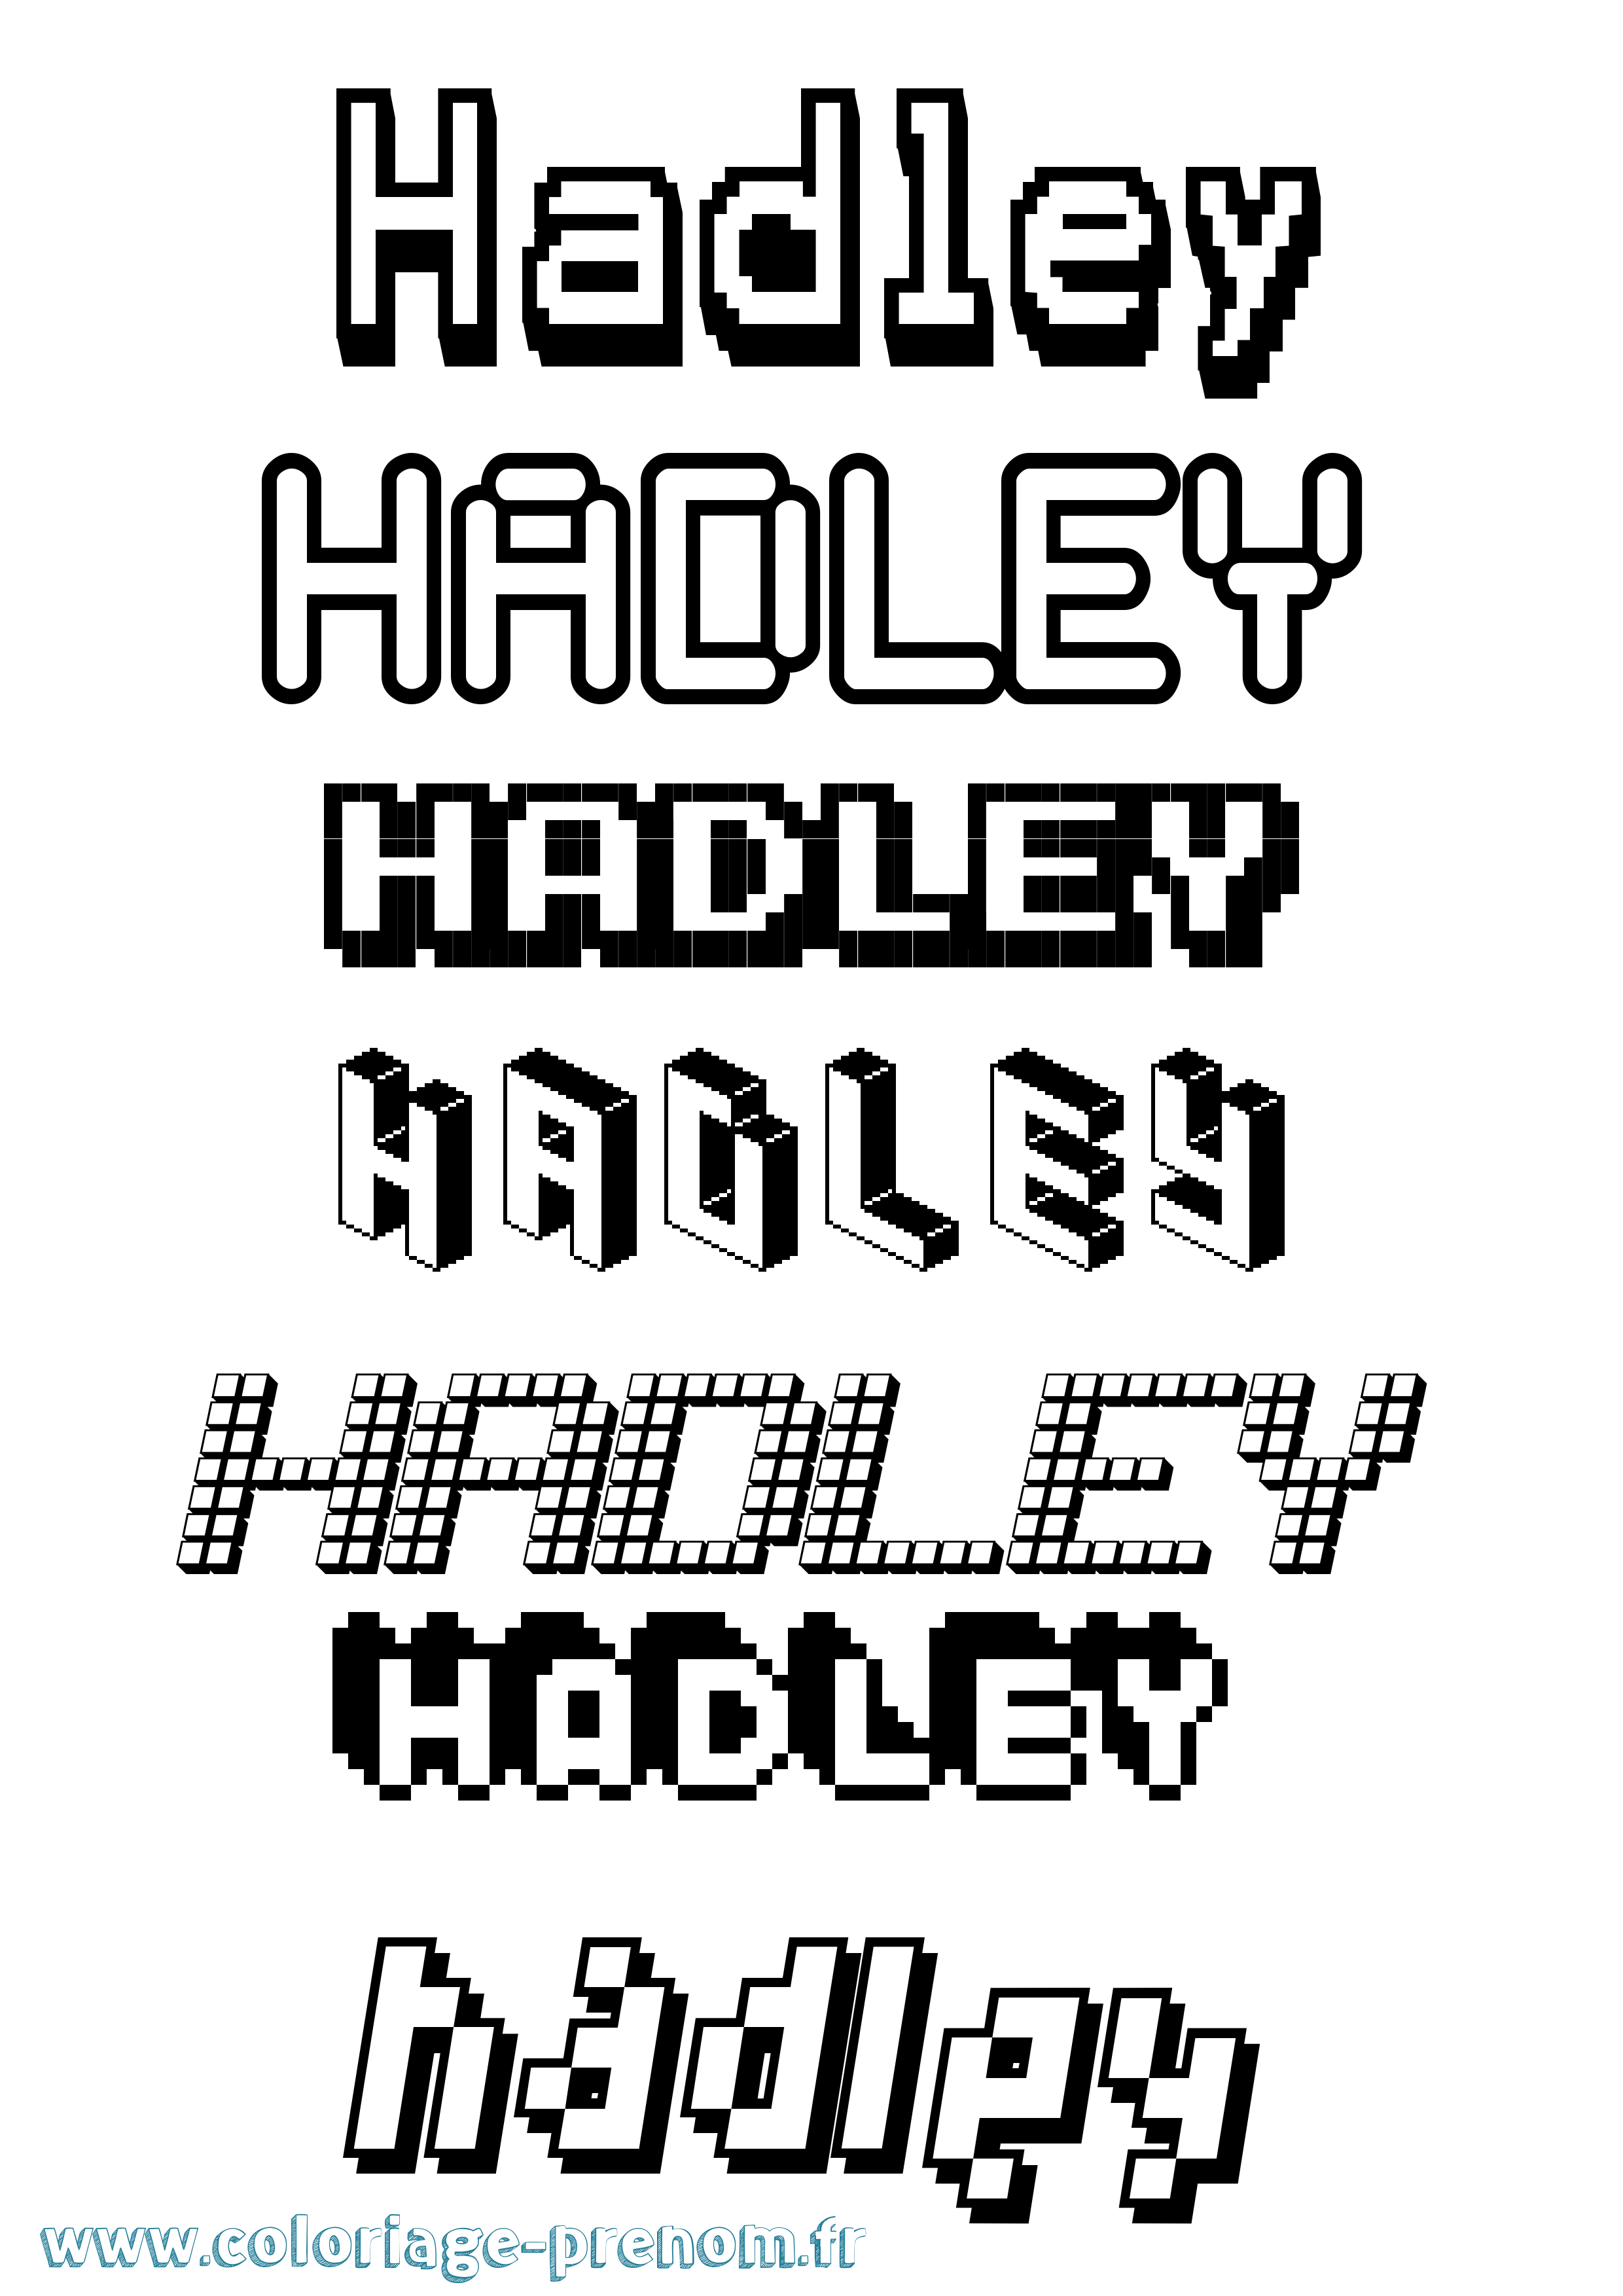 Coloriage prénom Hadley Pixel